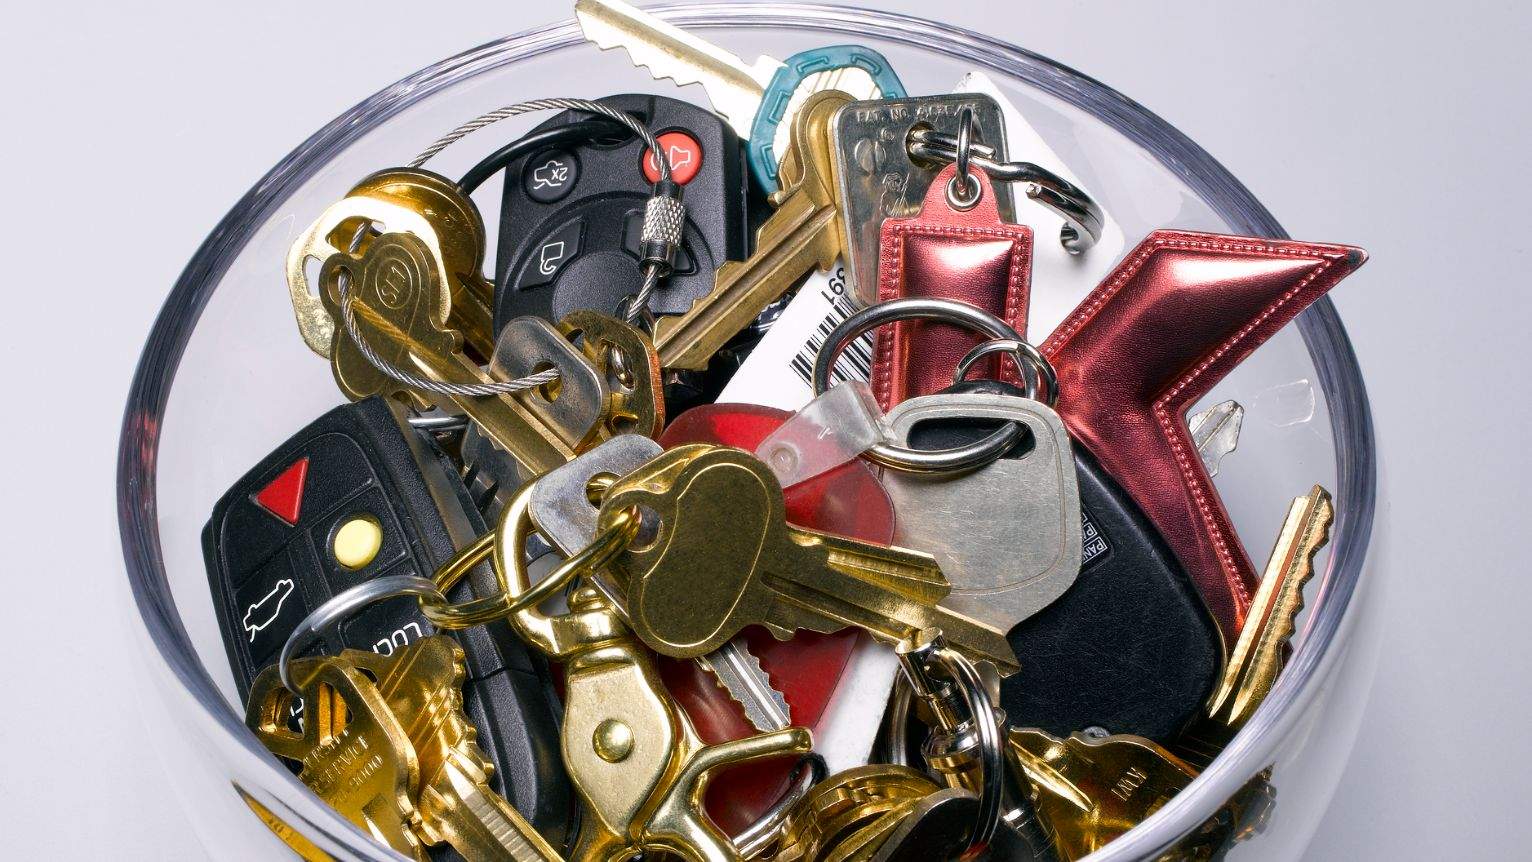 Auto Schlüssel nachmachen Schweiz, Auto Schlüssel kopieren, Auto Schlüssel codieren, Auto Schlüssel reparieren, Auto Schlüssel mit Fernbedienung, Auto Schlüssel mit Wegfahrsperre, US Oldtimer Schlüssel, Wohnwagen Schlüssel, Wohnmobil Schlüssel, Lastwagen Schlüssel, Velo Schlüssel,